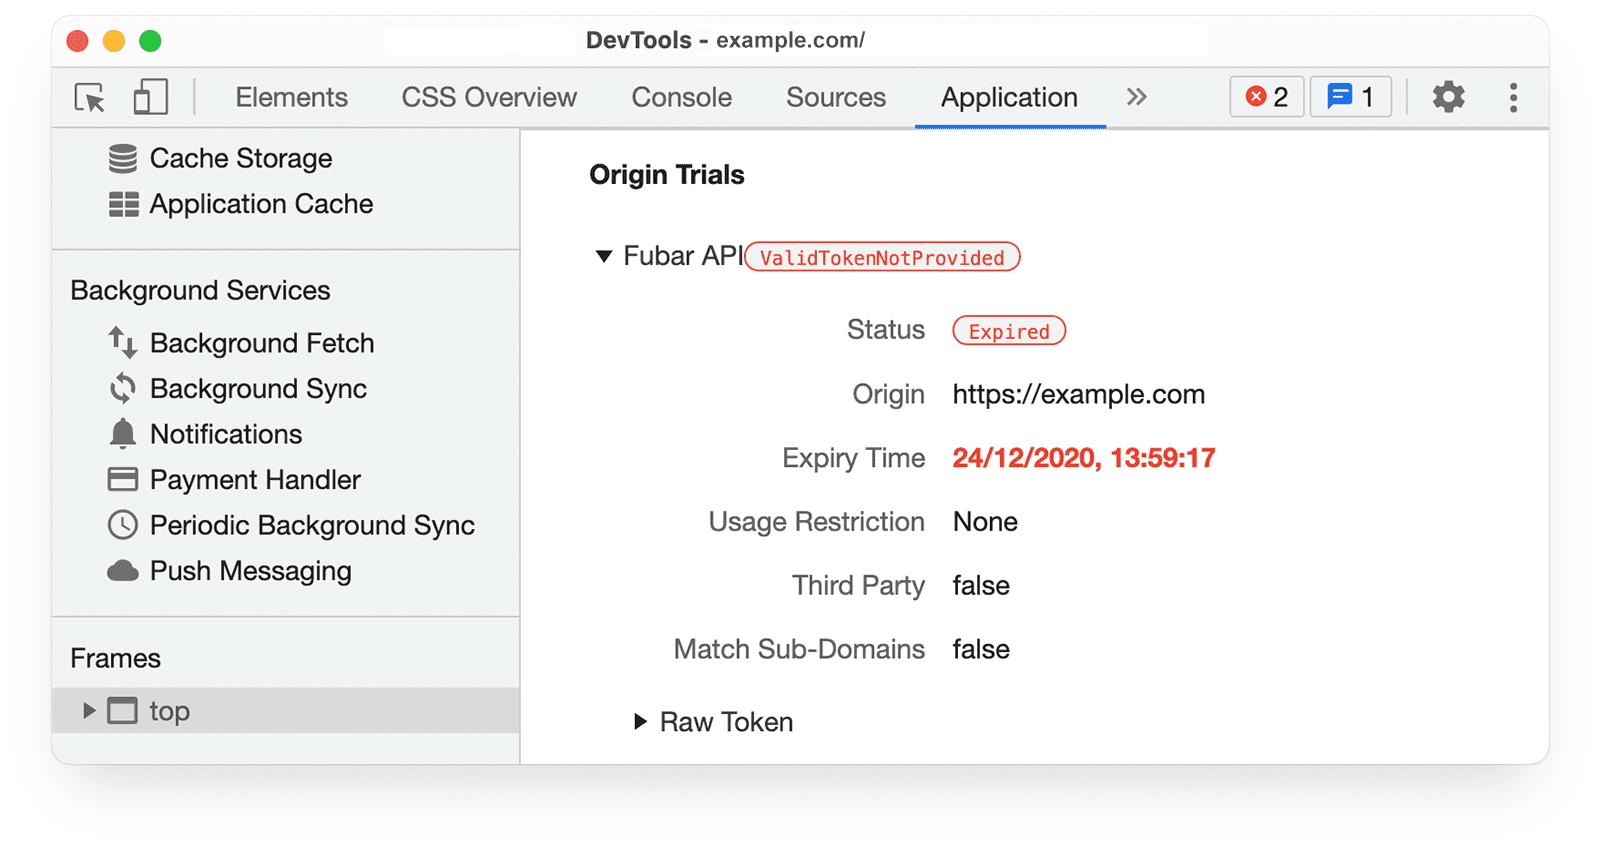 Chrome DevTools 
[Application] パネル内のオリジン トライアル情報。[Status: Success] がハイライト表示されている。